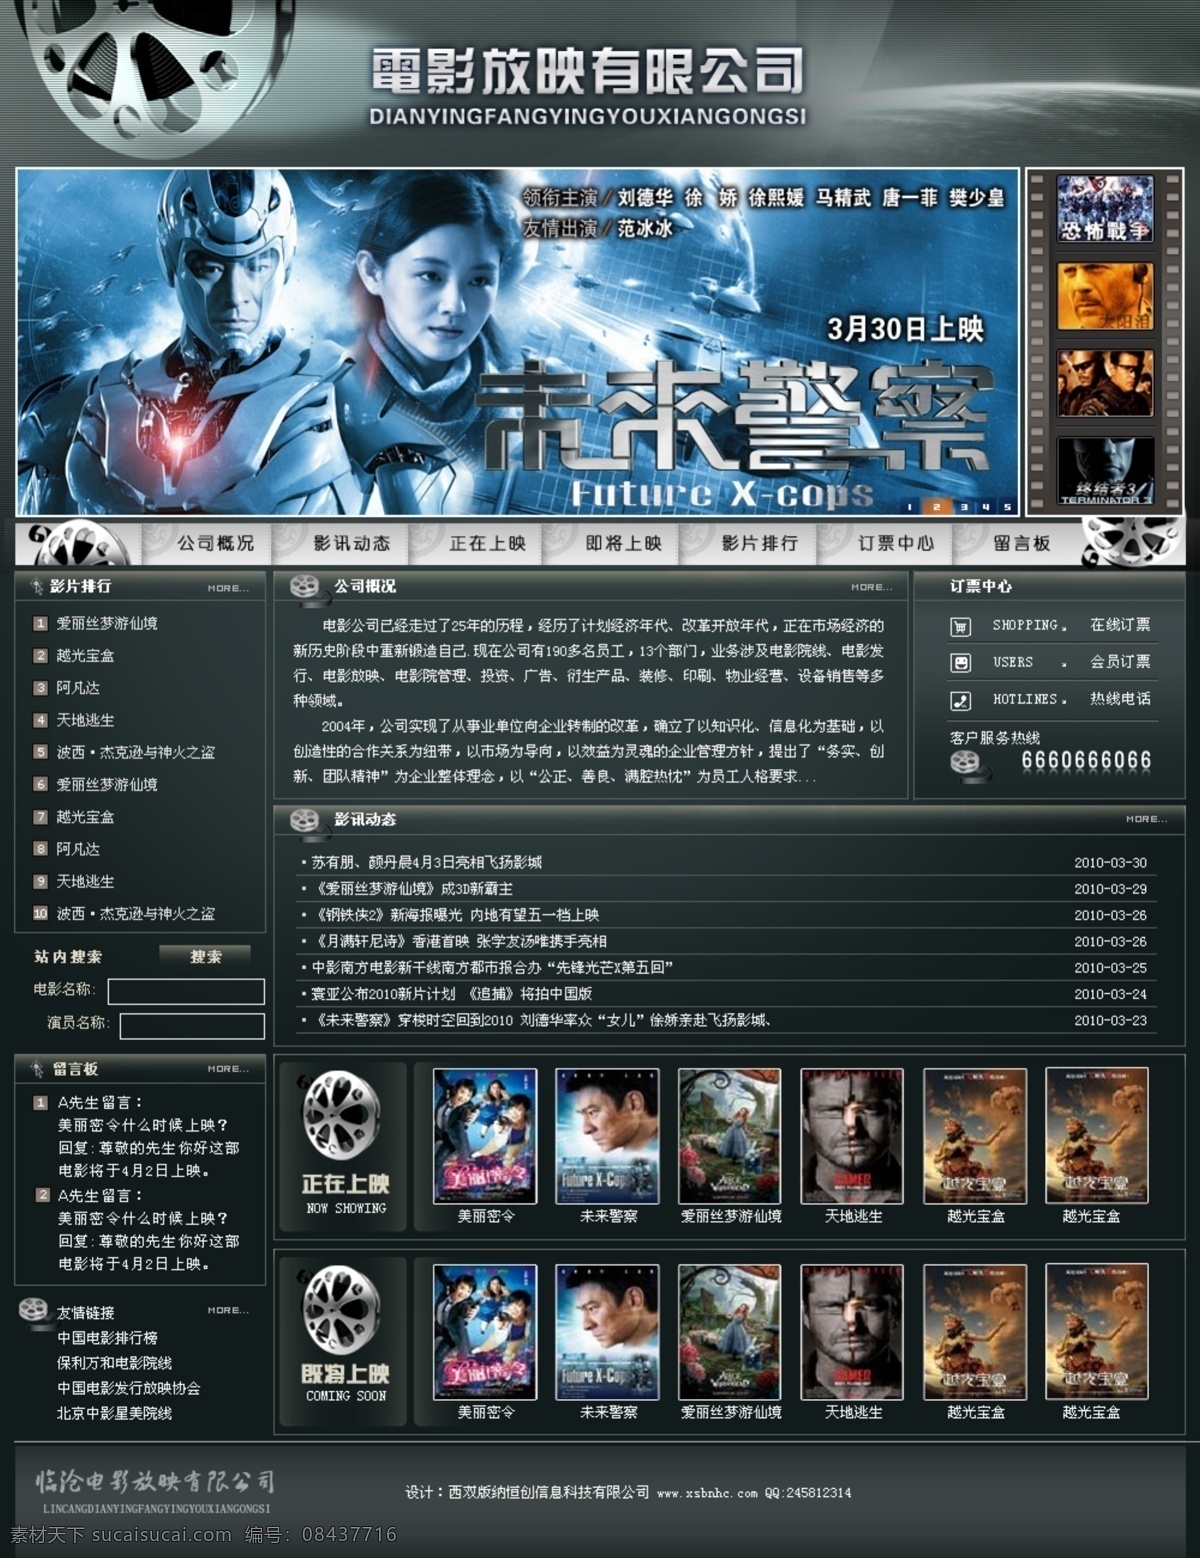 电影 公司 网页 模版 网页模版 中文模版 网页模板 源文件 黑色